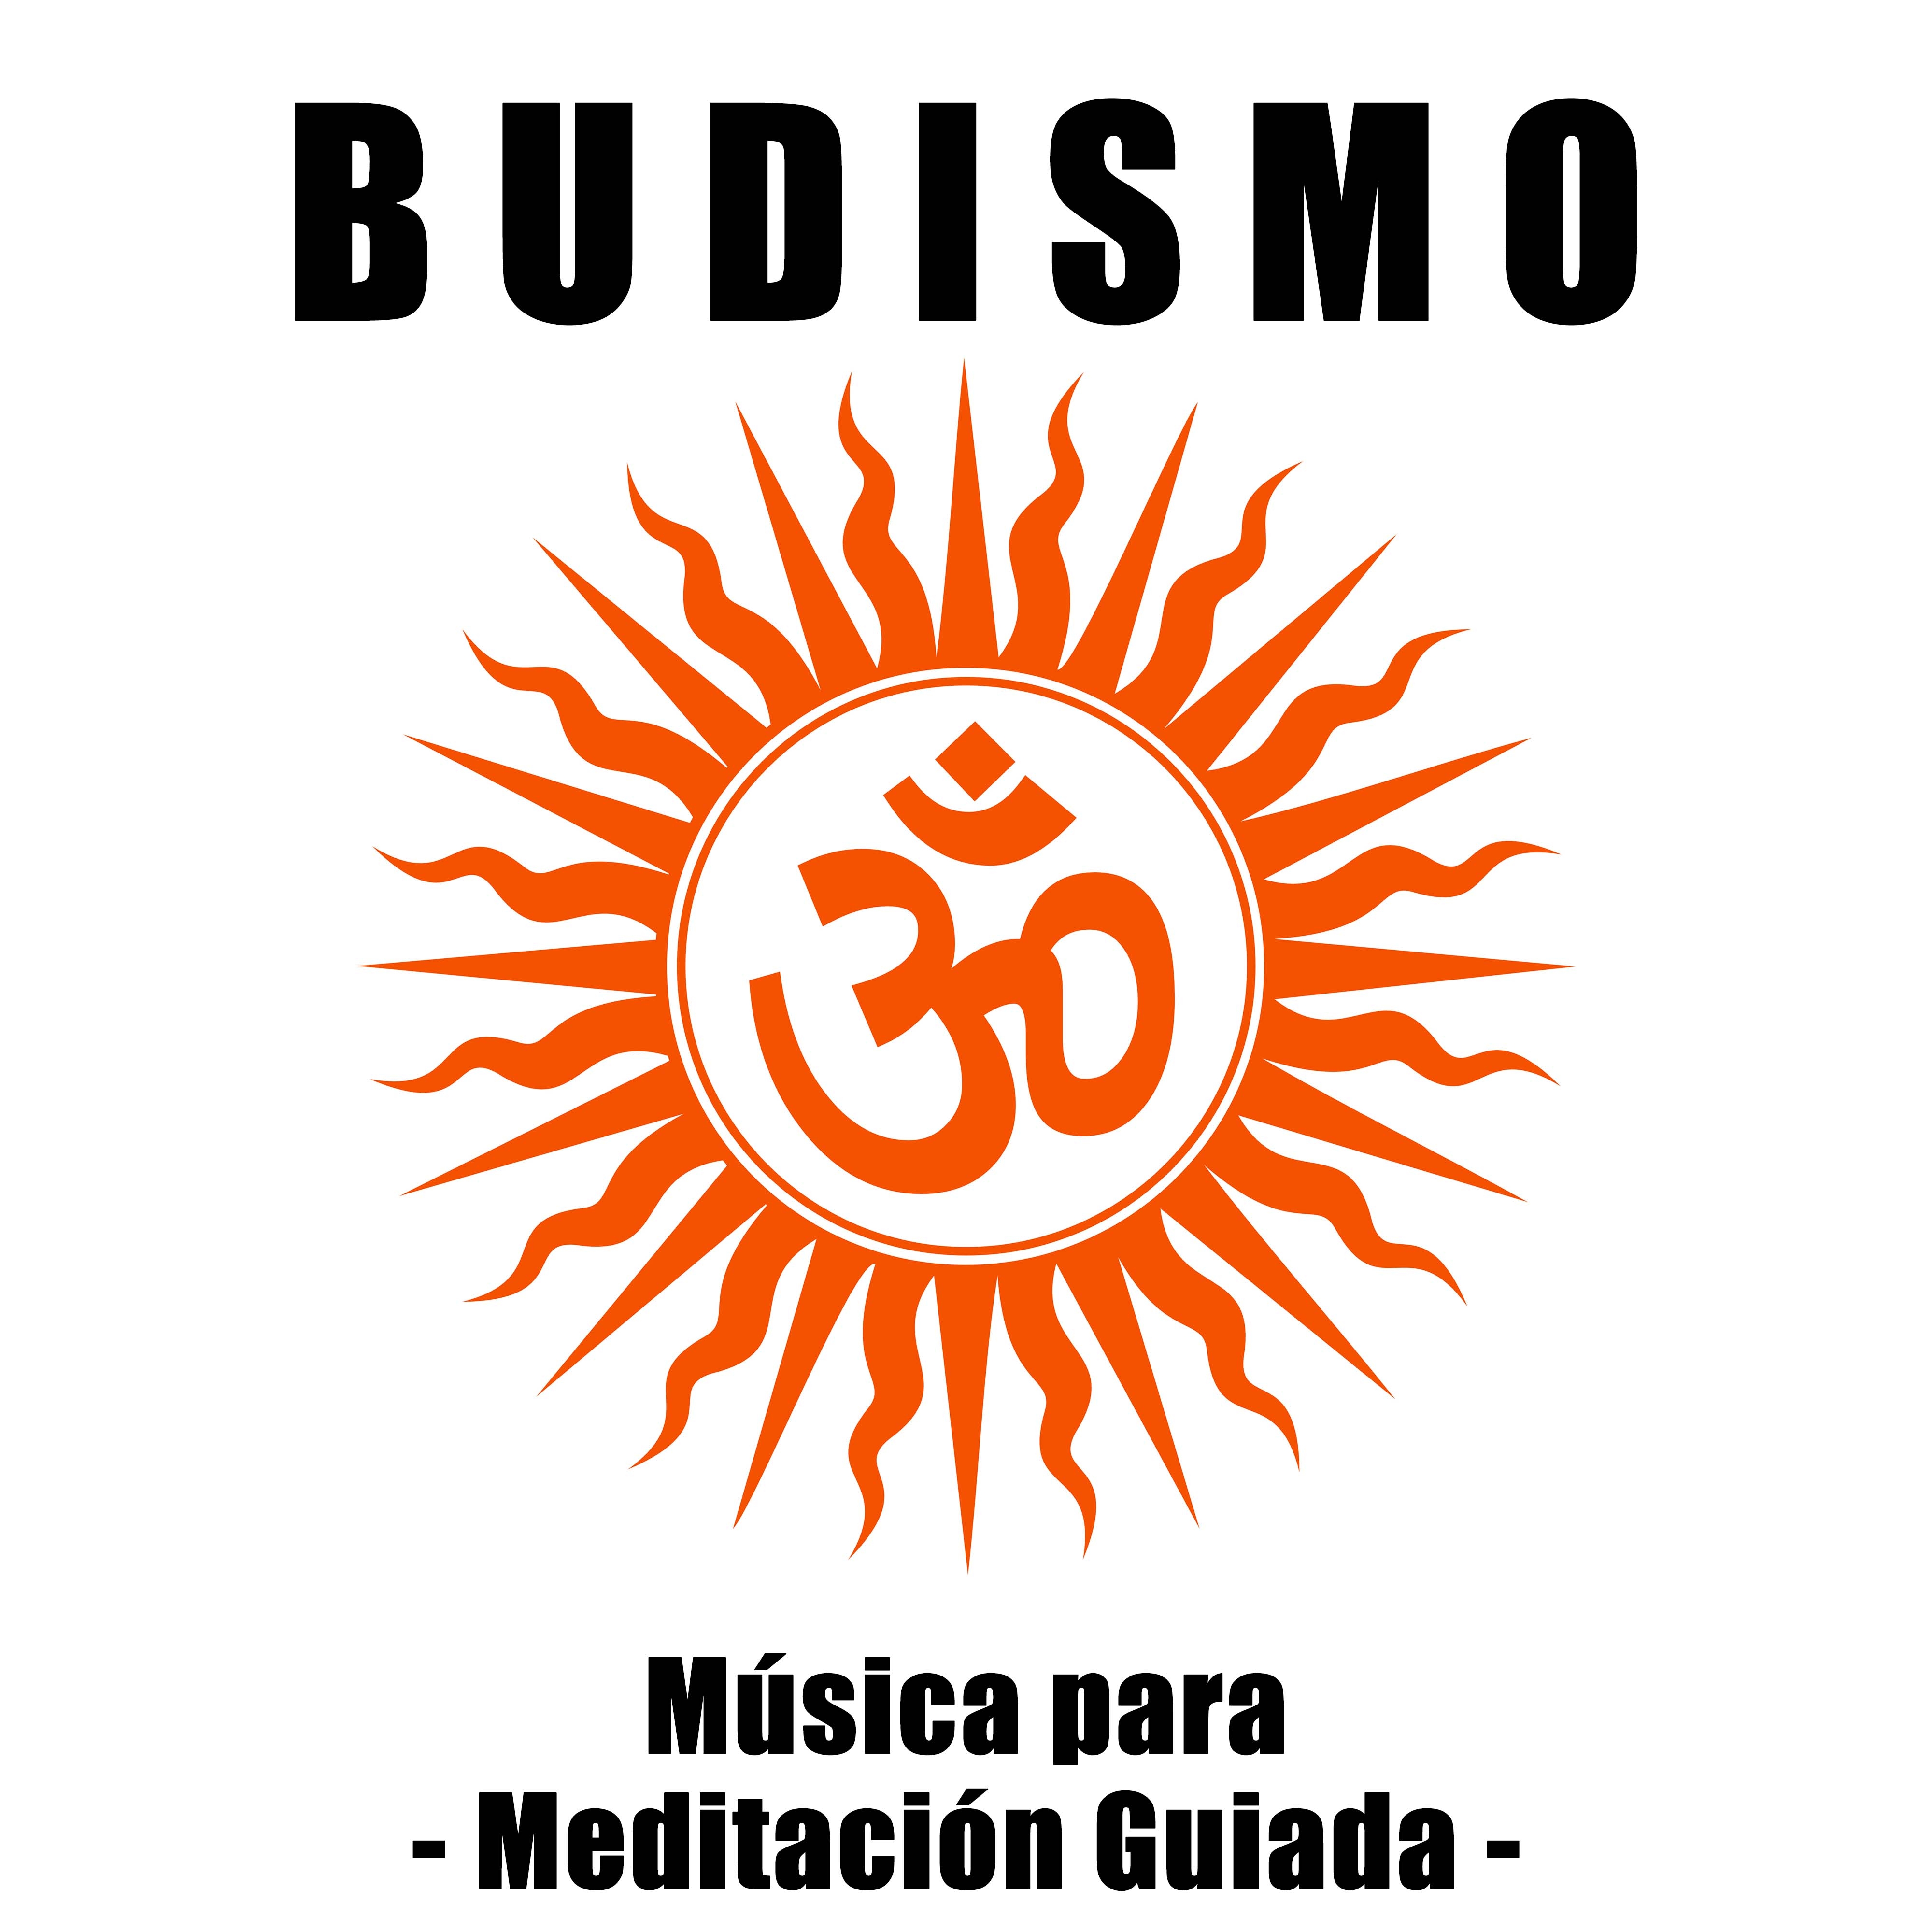 Budismo - Musica para Meditacion Guiada